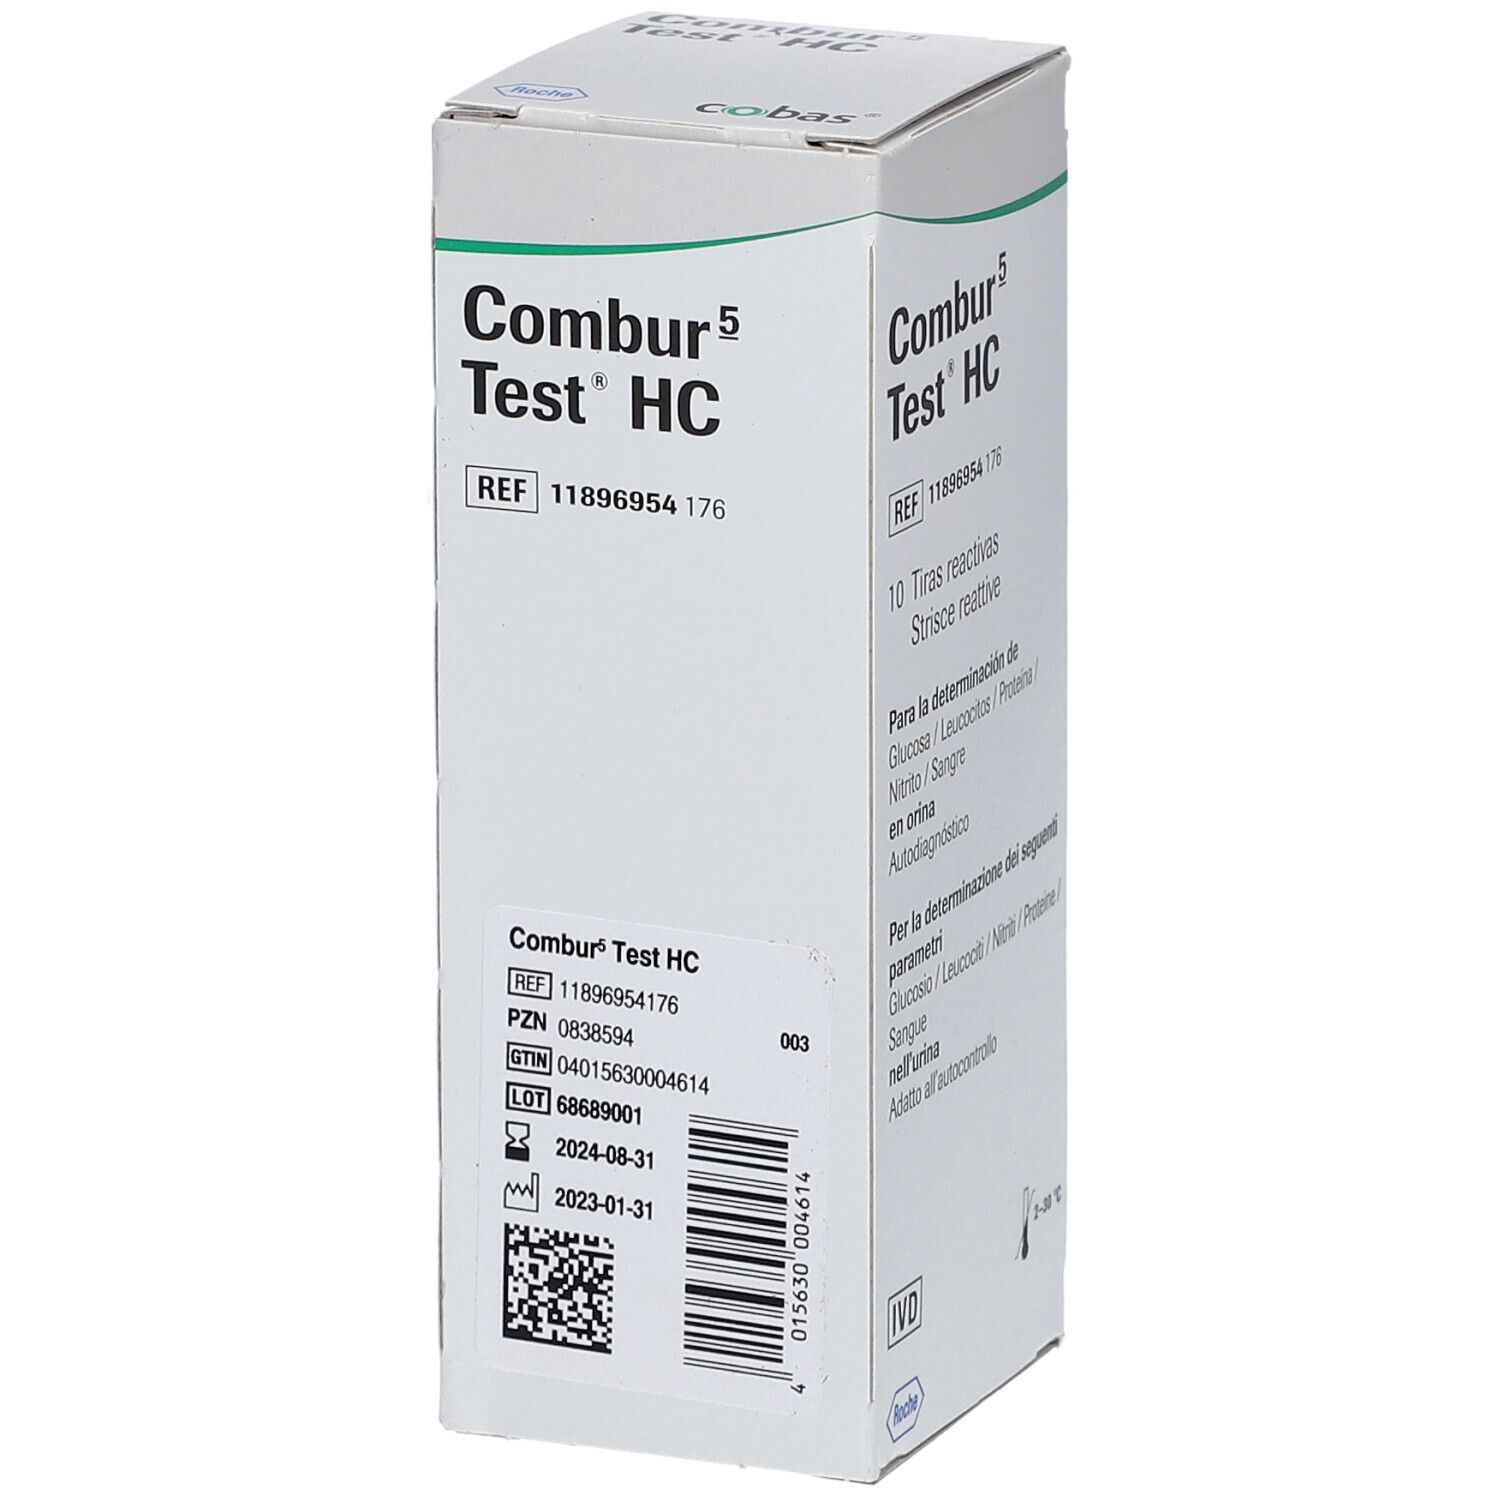 Combur 5 Test® HC Teststreifen